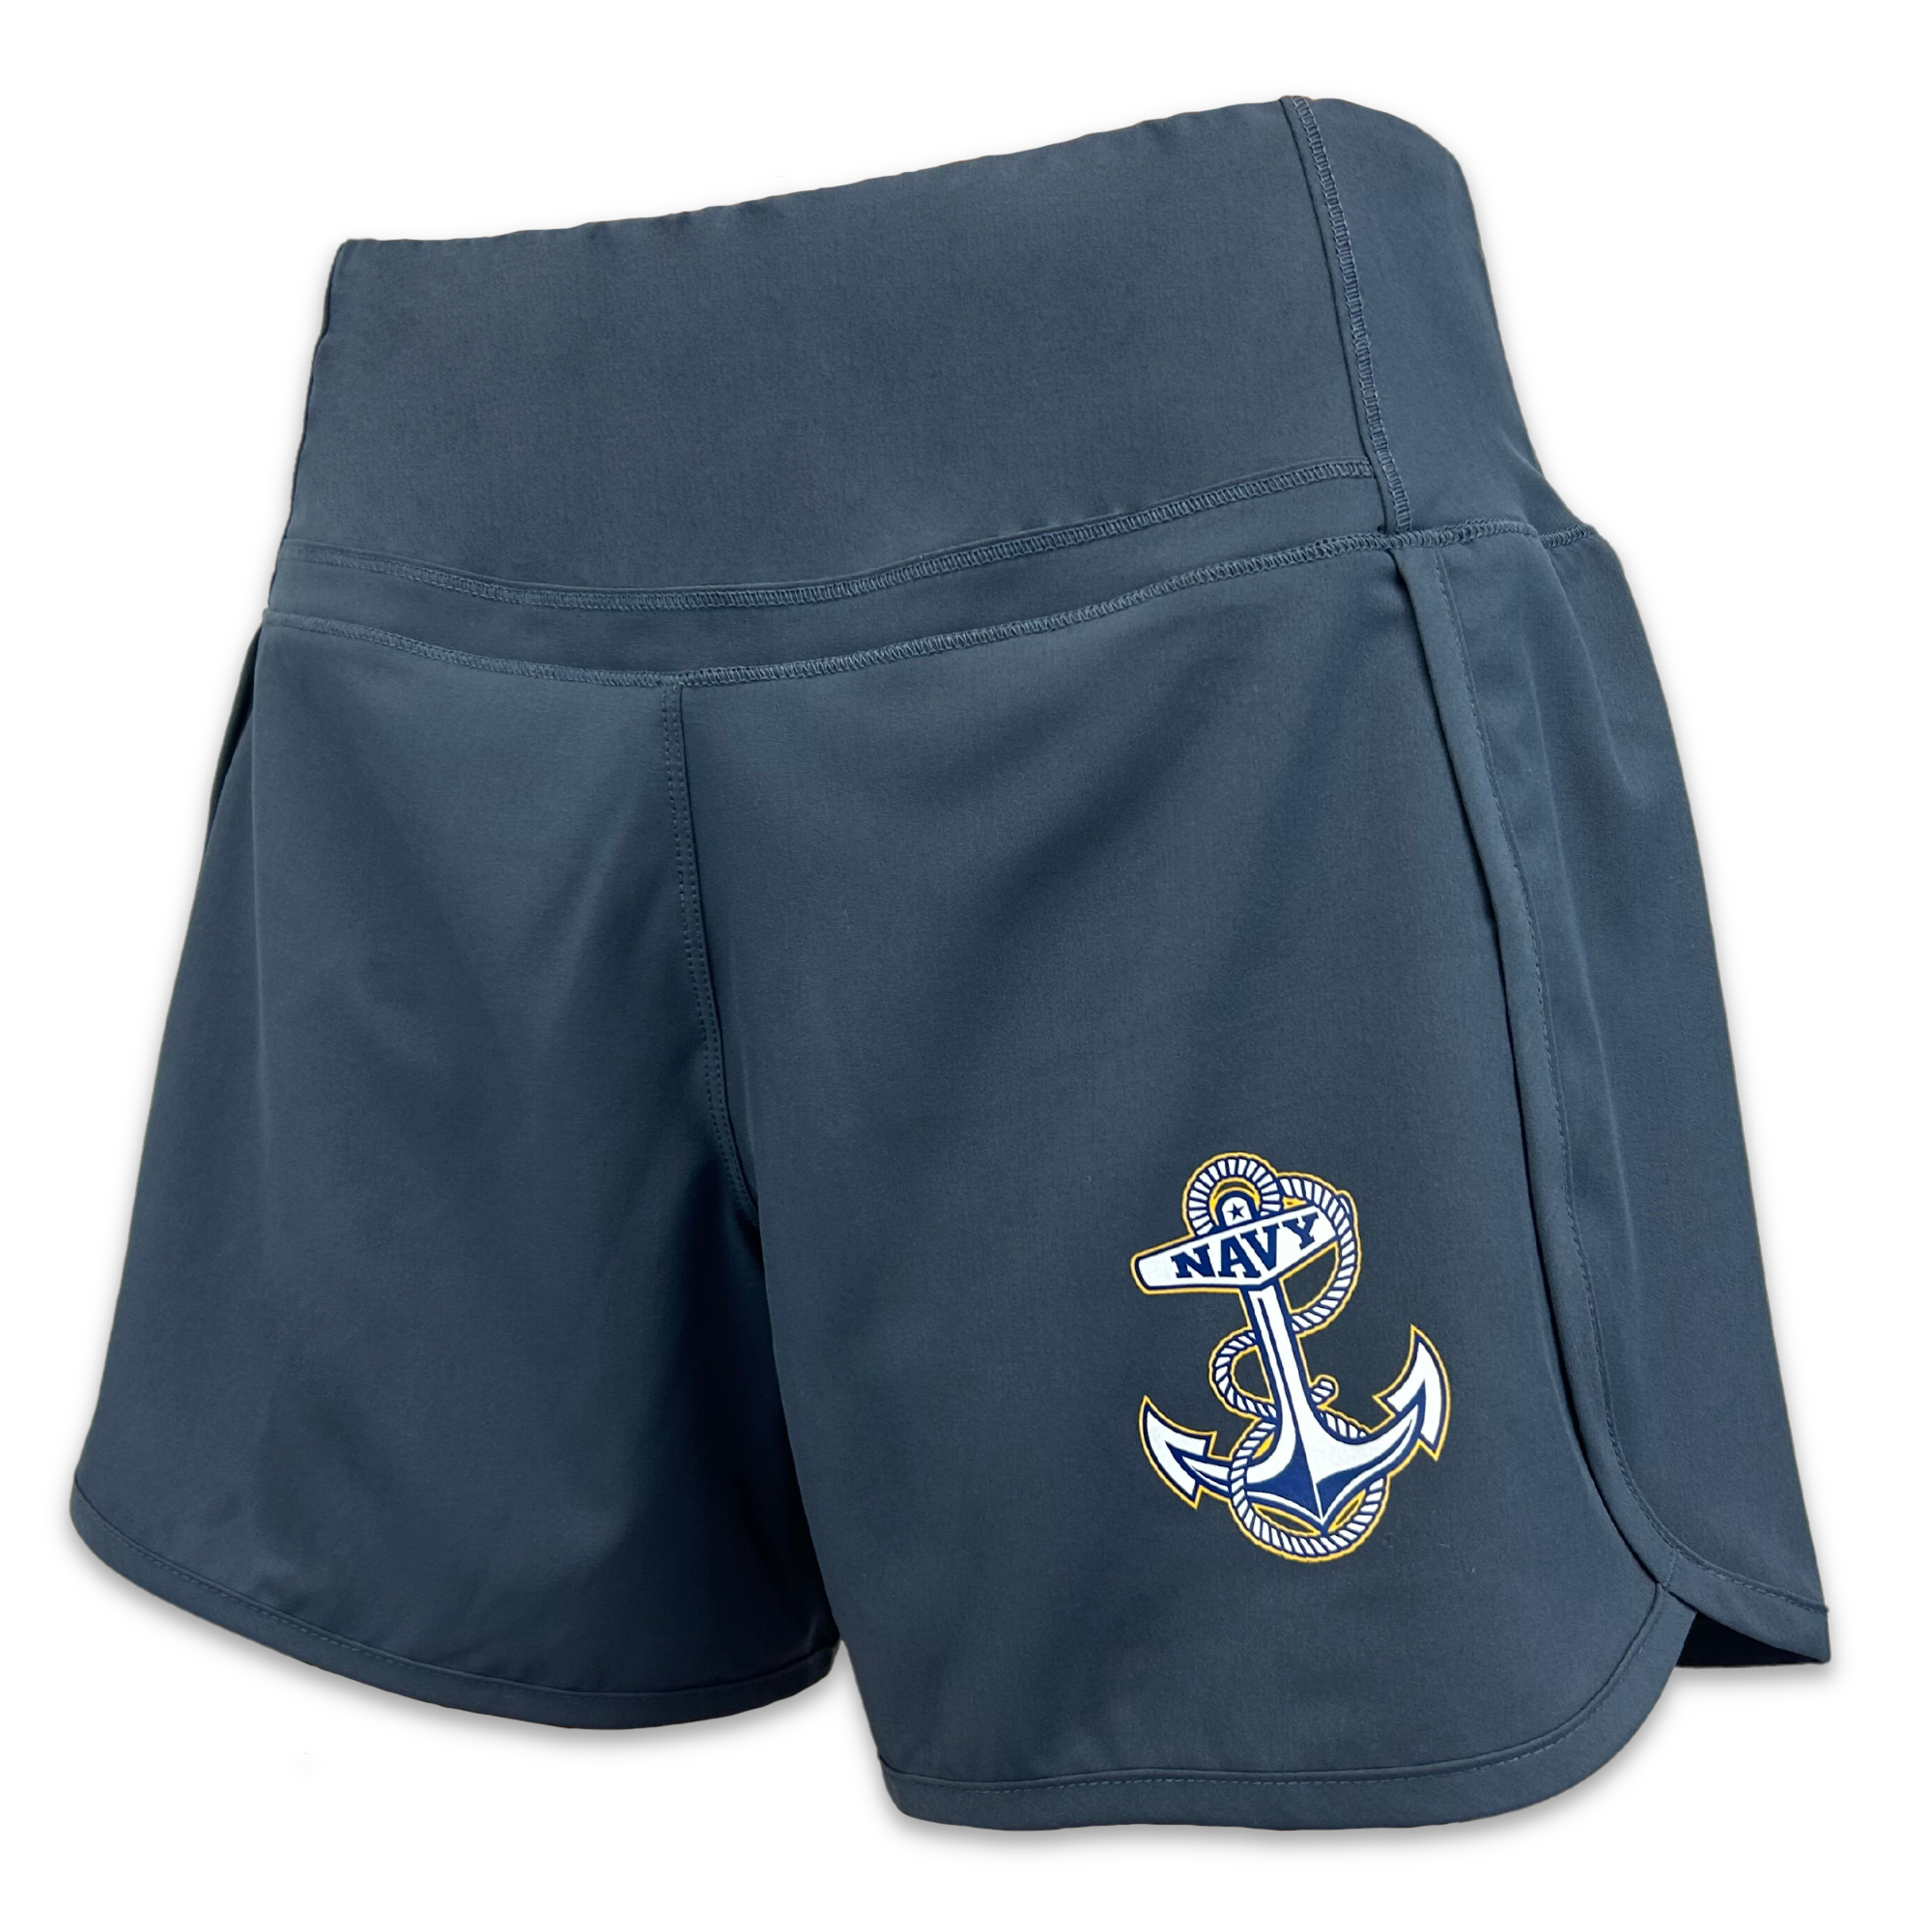 Navy Stretch Shorts